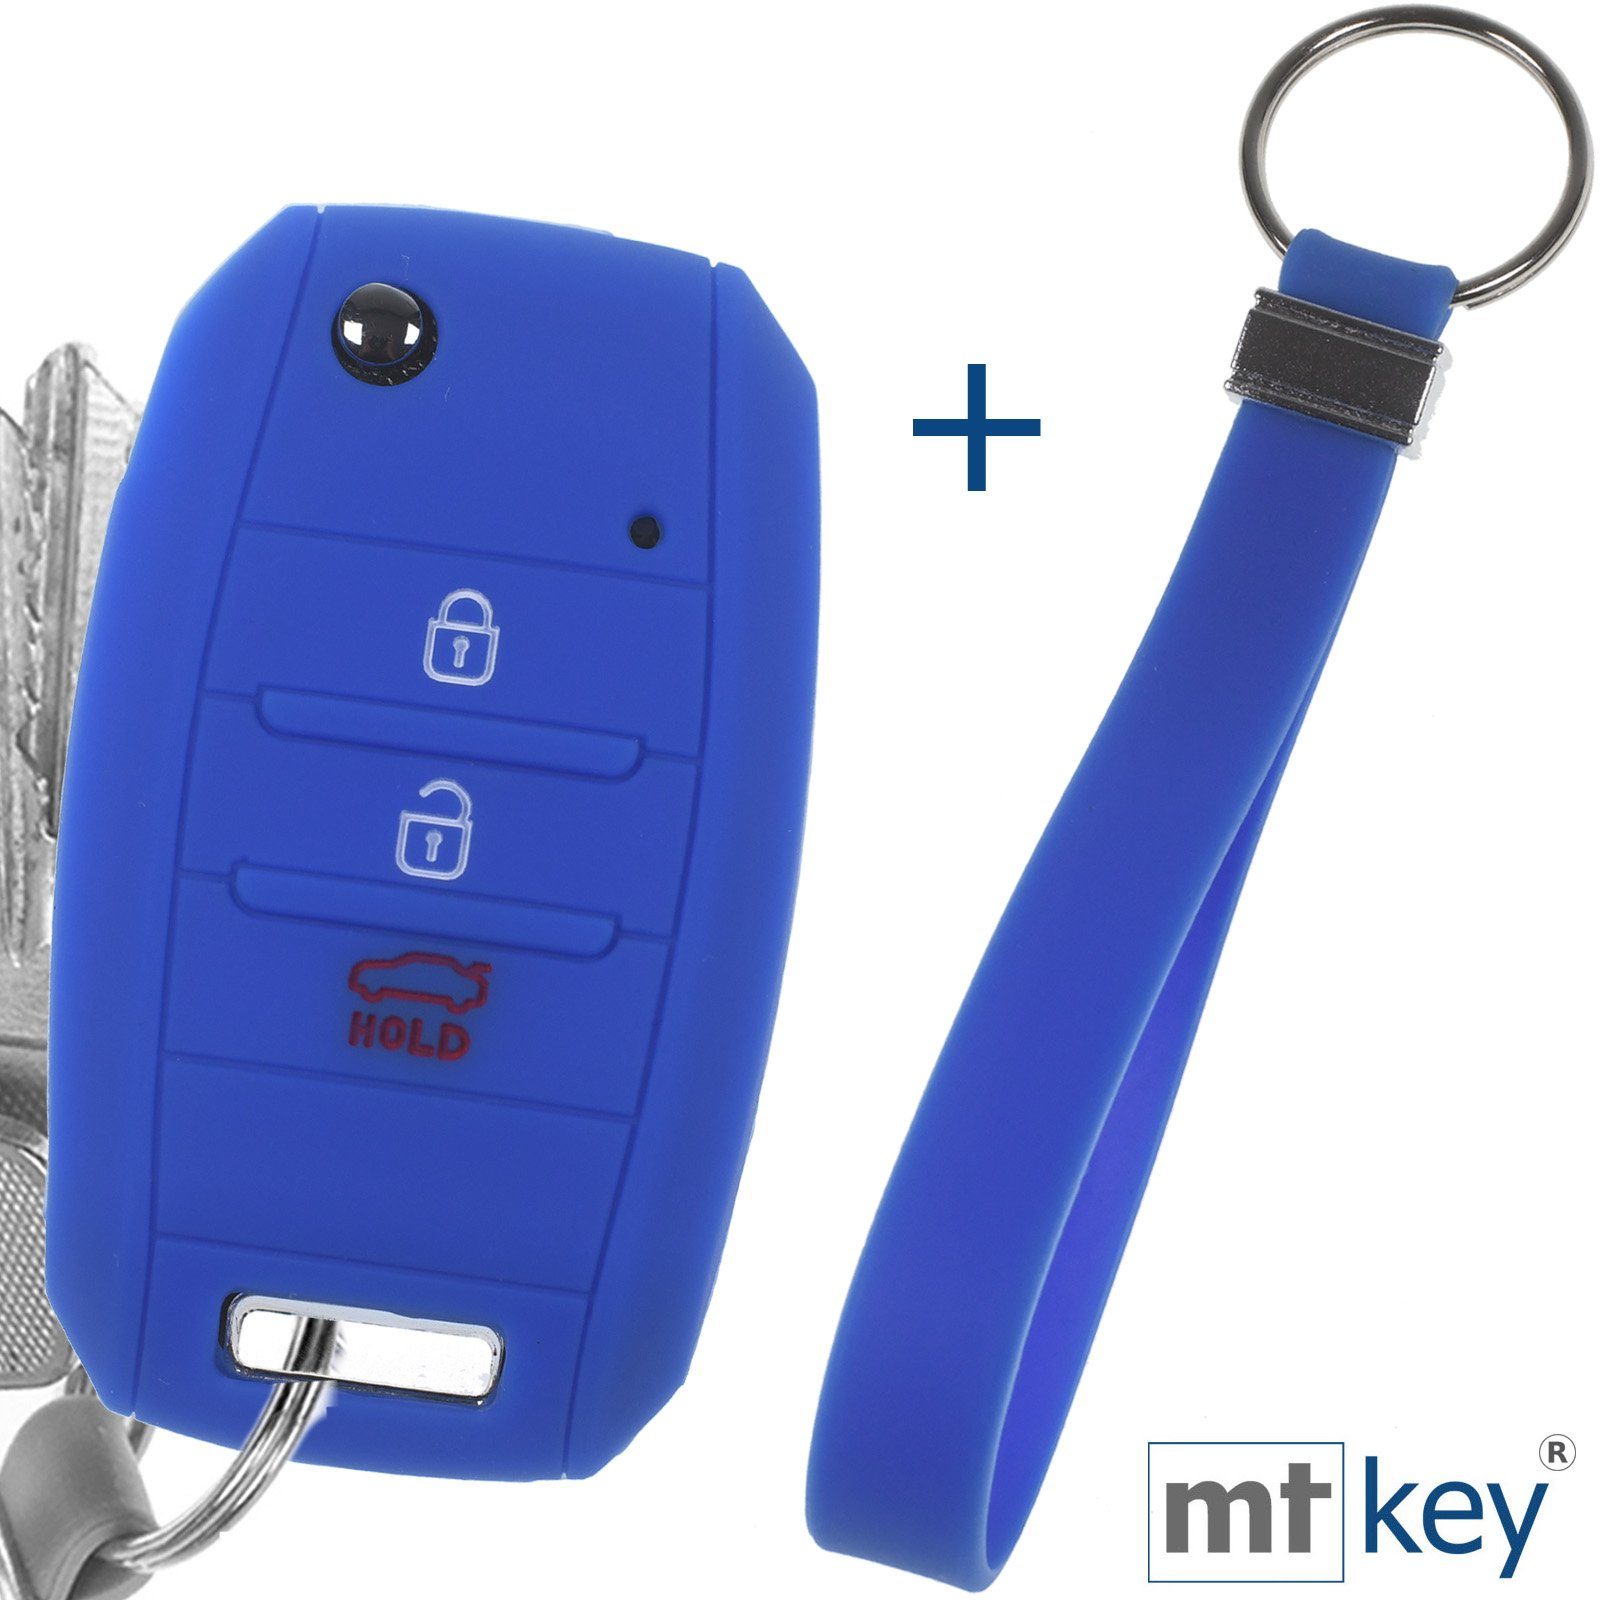 Carens Sportage Tasten 3 mt-key Rio Softcase für Stonic Ceed Schutzhülle Blau Soul Autoschlüssel Picantio KIA mit Schlüsselband, Silikon Schlüsseltasche